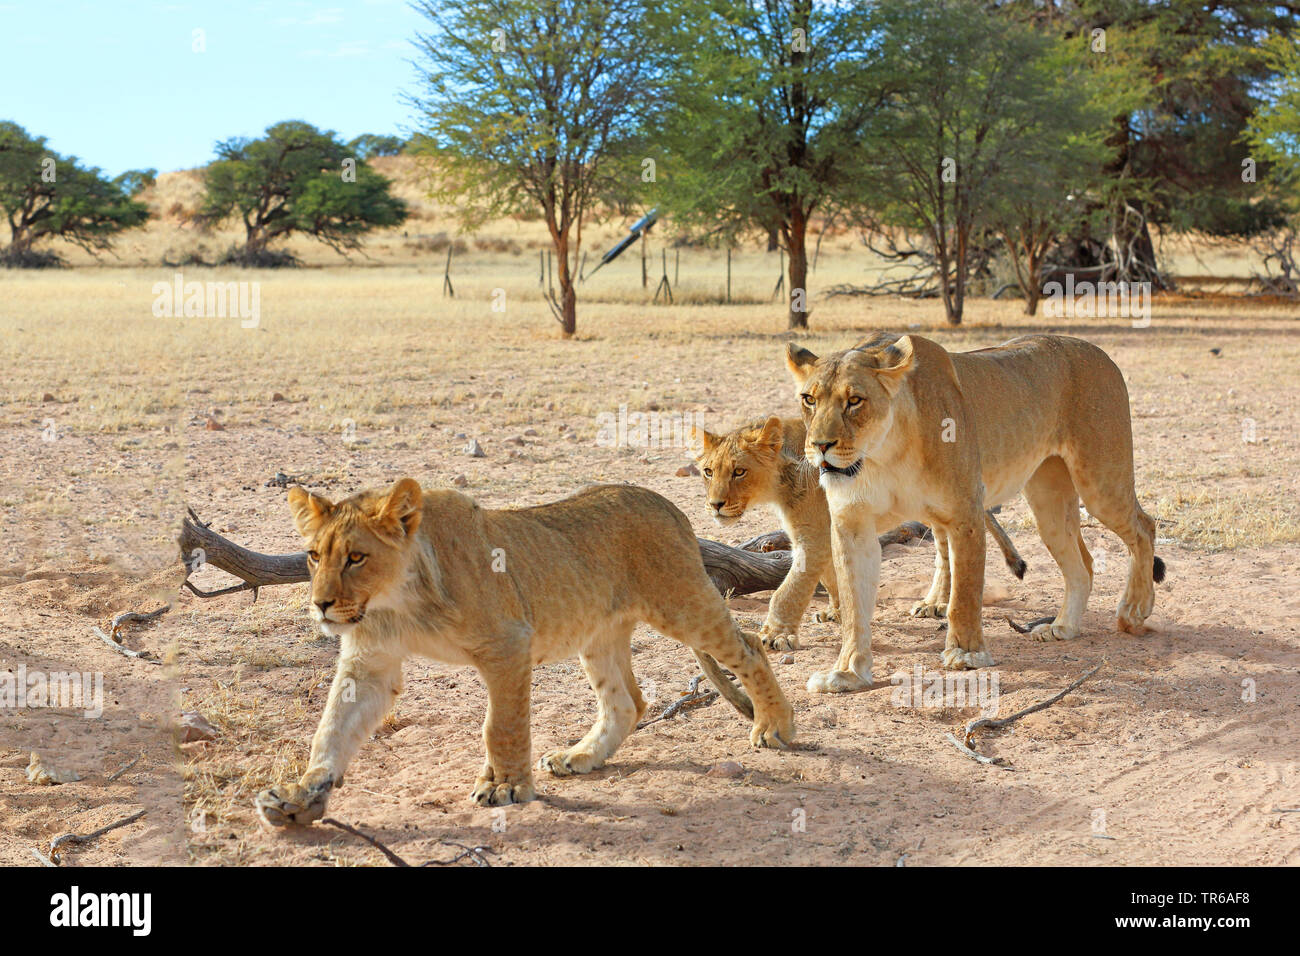 Lion (Panthera leo), lionne marchant avec deux jeunes animaux dans la savane, Afrique du Sud, Kgalagadi Transfrontier National Park Banque D'Images